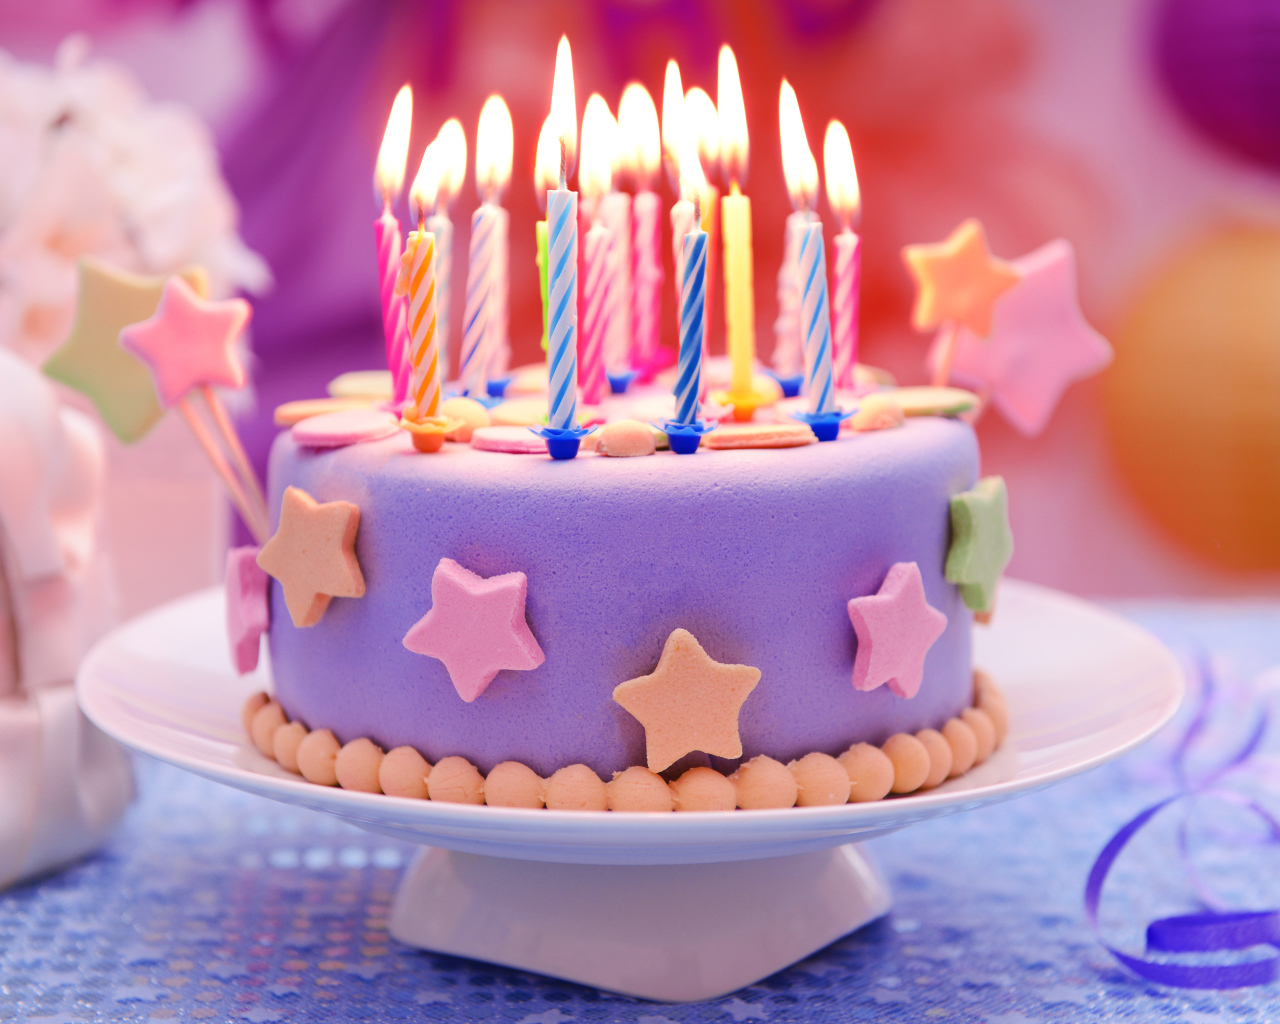 Красивый торт на день рождения со свечами